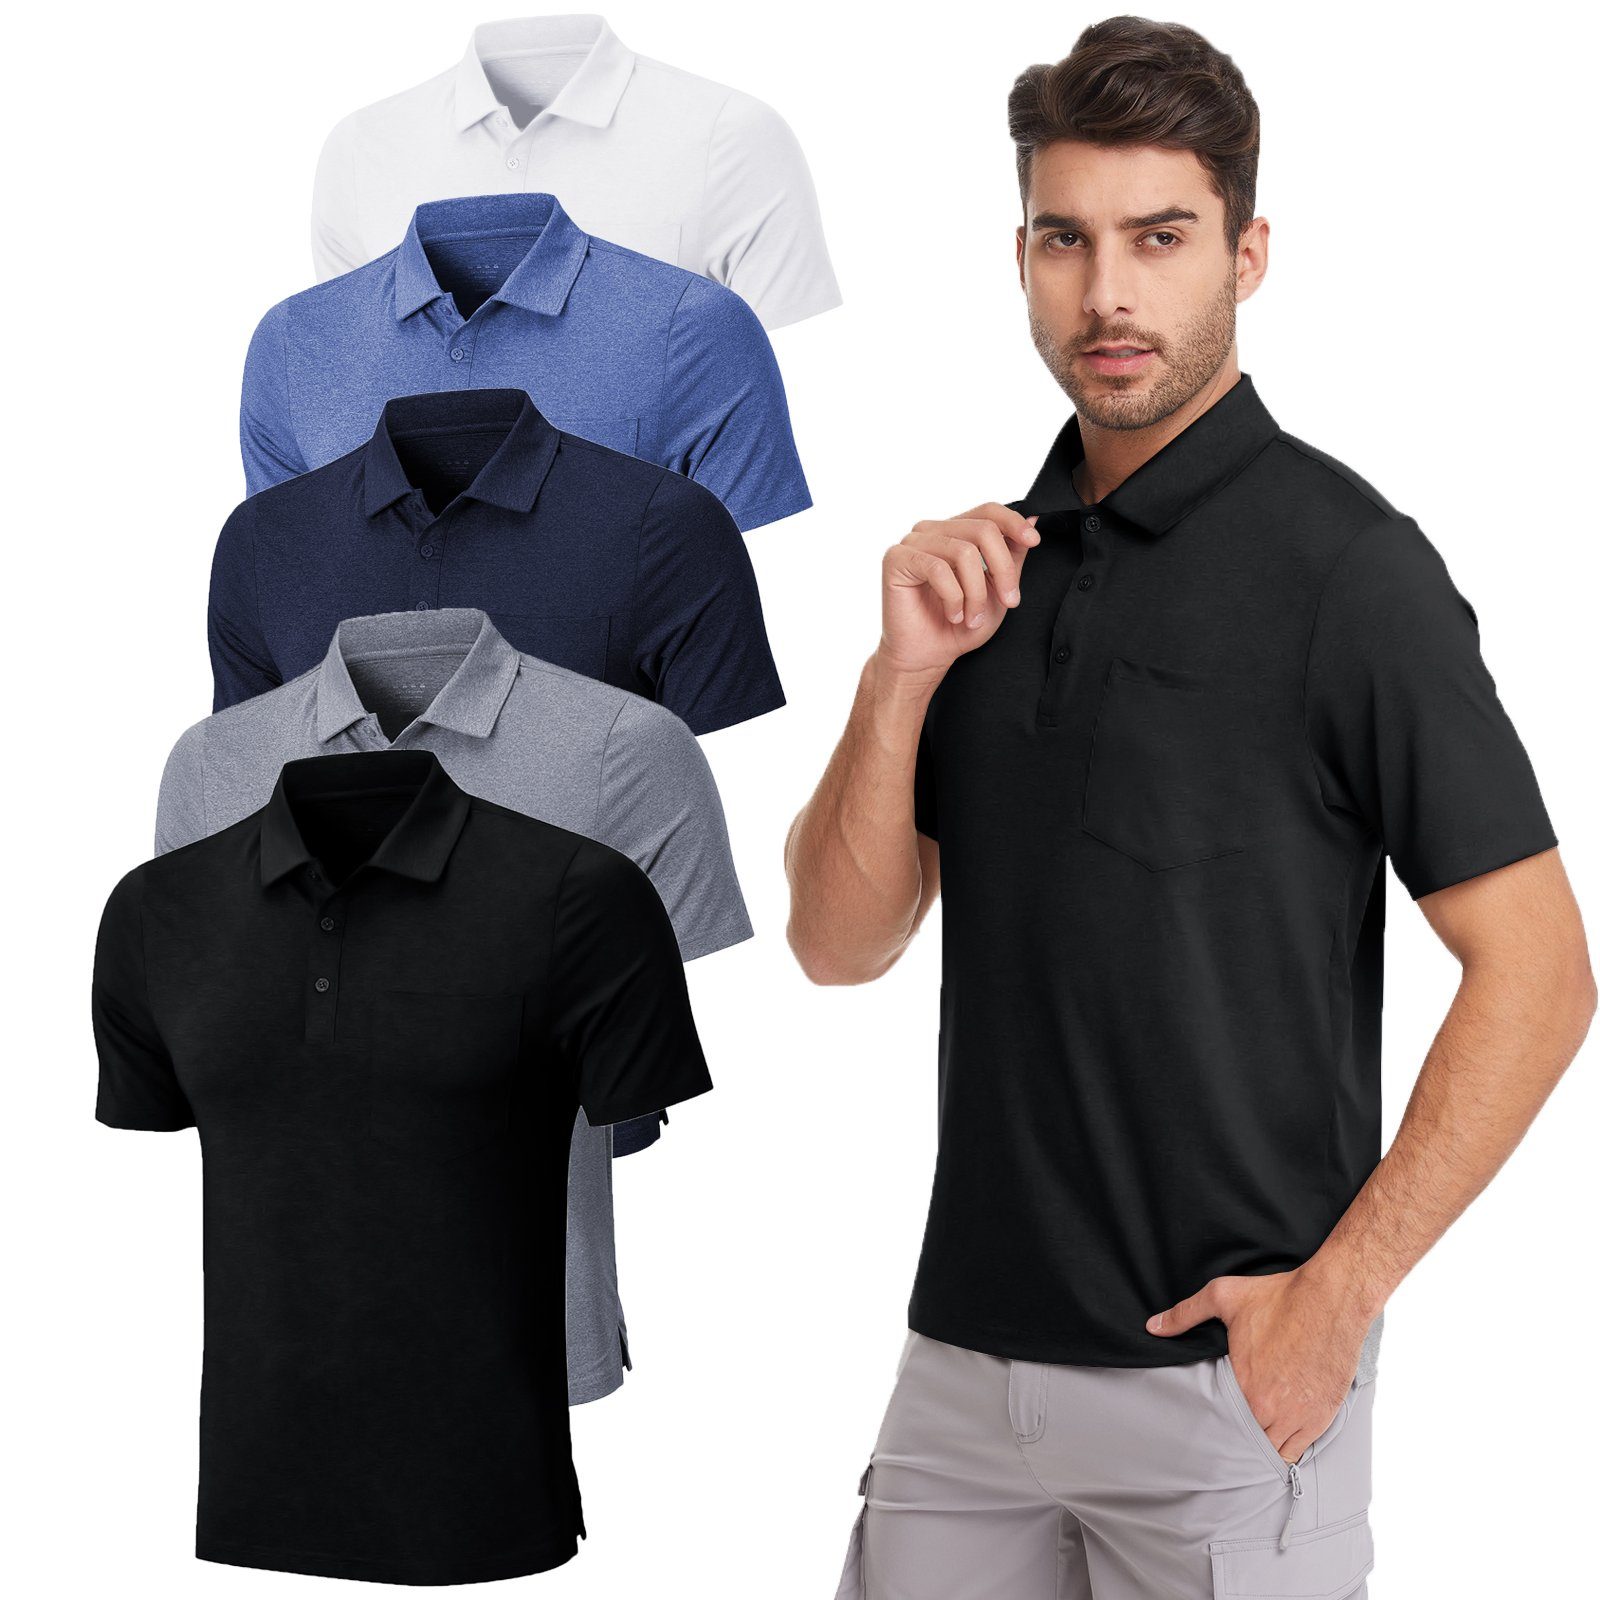 MEETYOO Poloshirt Herren Poloshirt Polohemd (Kurzarm T-Shirt, Classic Tee Hemd) Unifarben, Casual, Button-Down-Kragen, Atmungsaktiv Grau